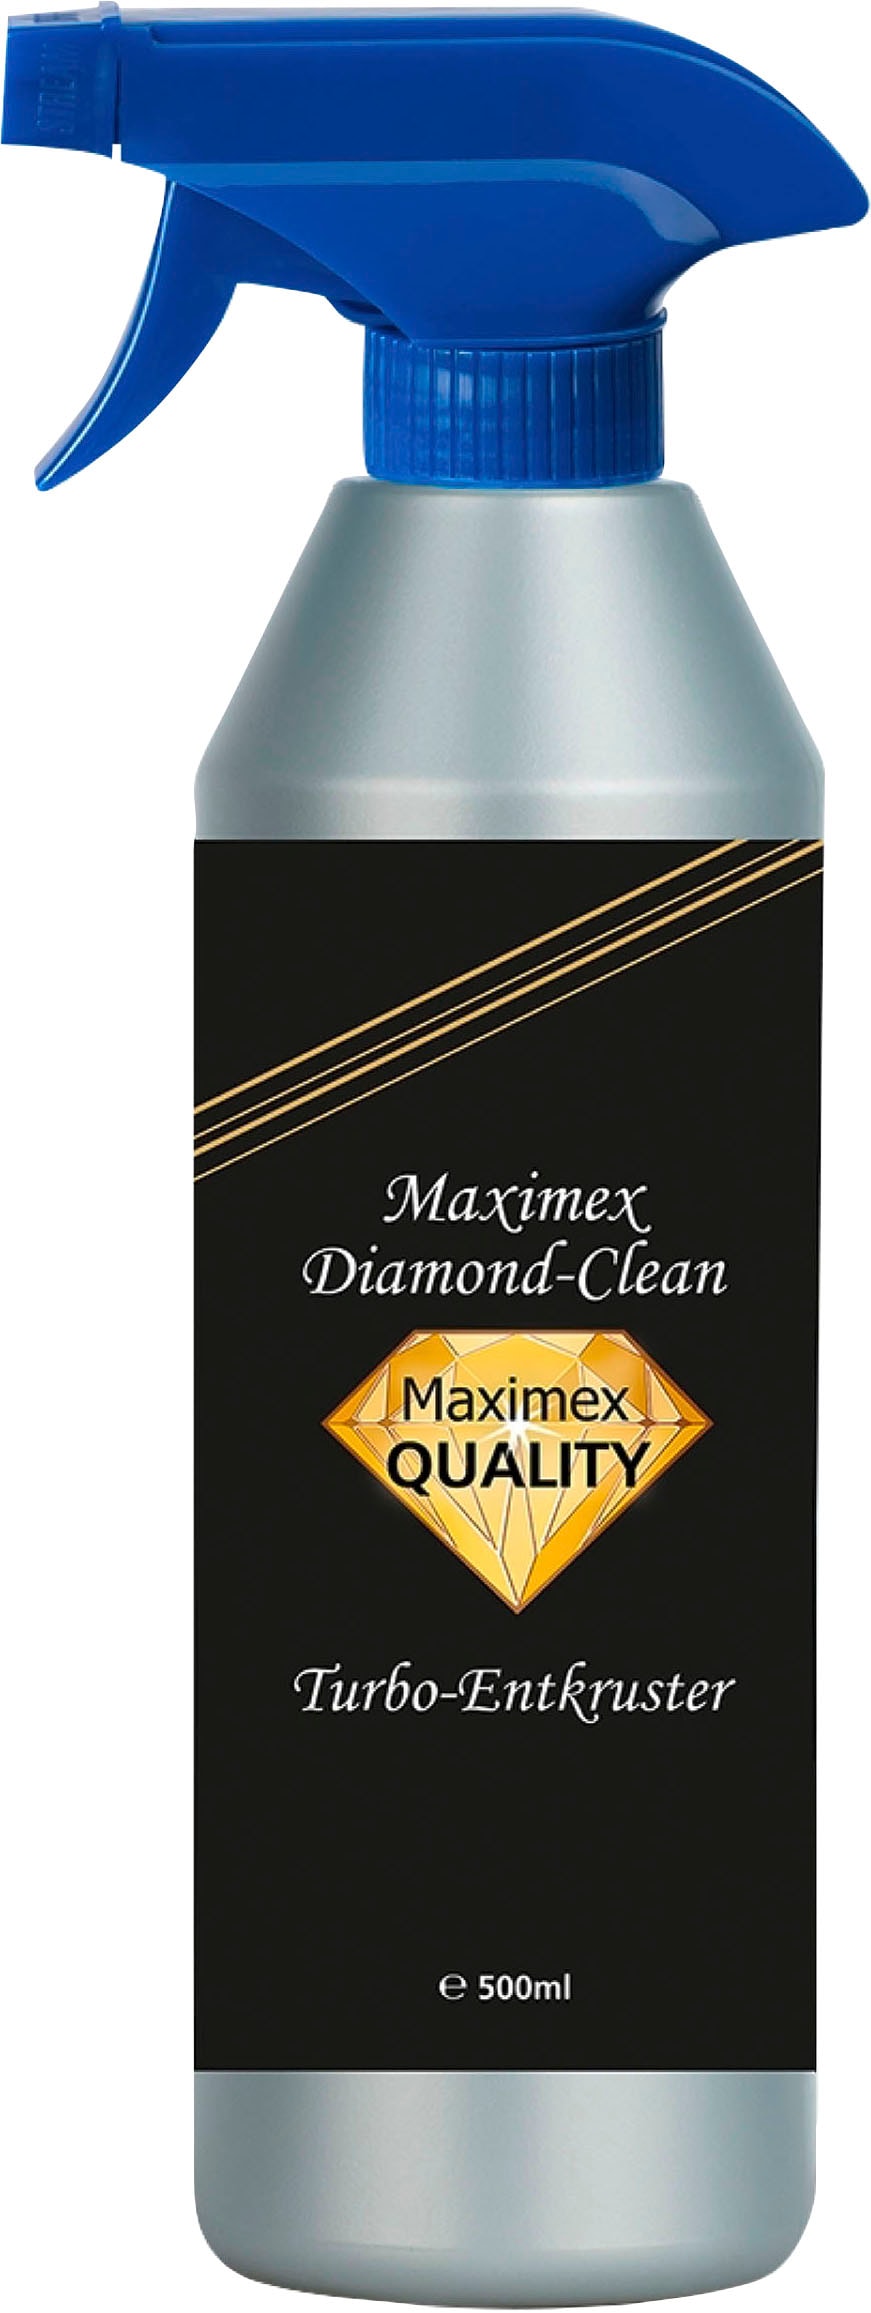 Maximex Backofenreiniger »Diamond Clean«, effektiver Reiniger gegen Verschmutzungen für Backofen und Grill